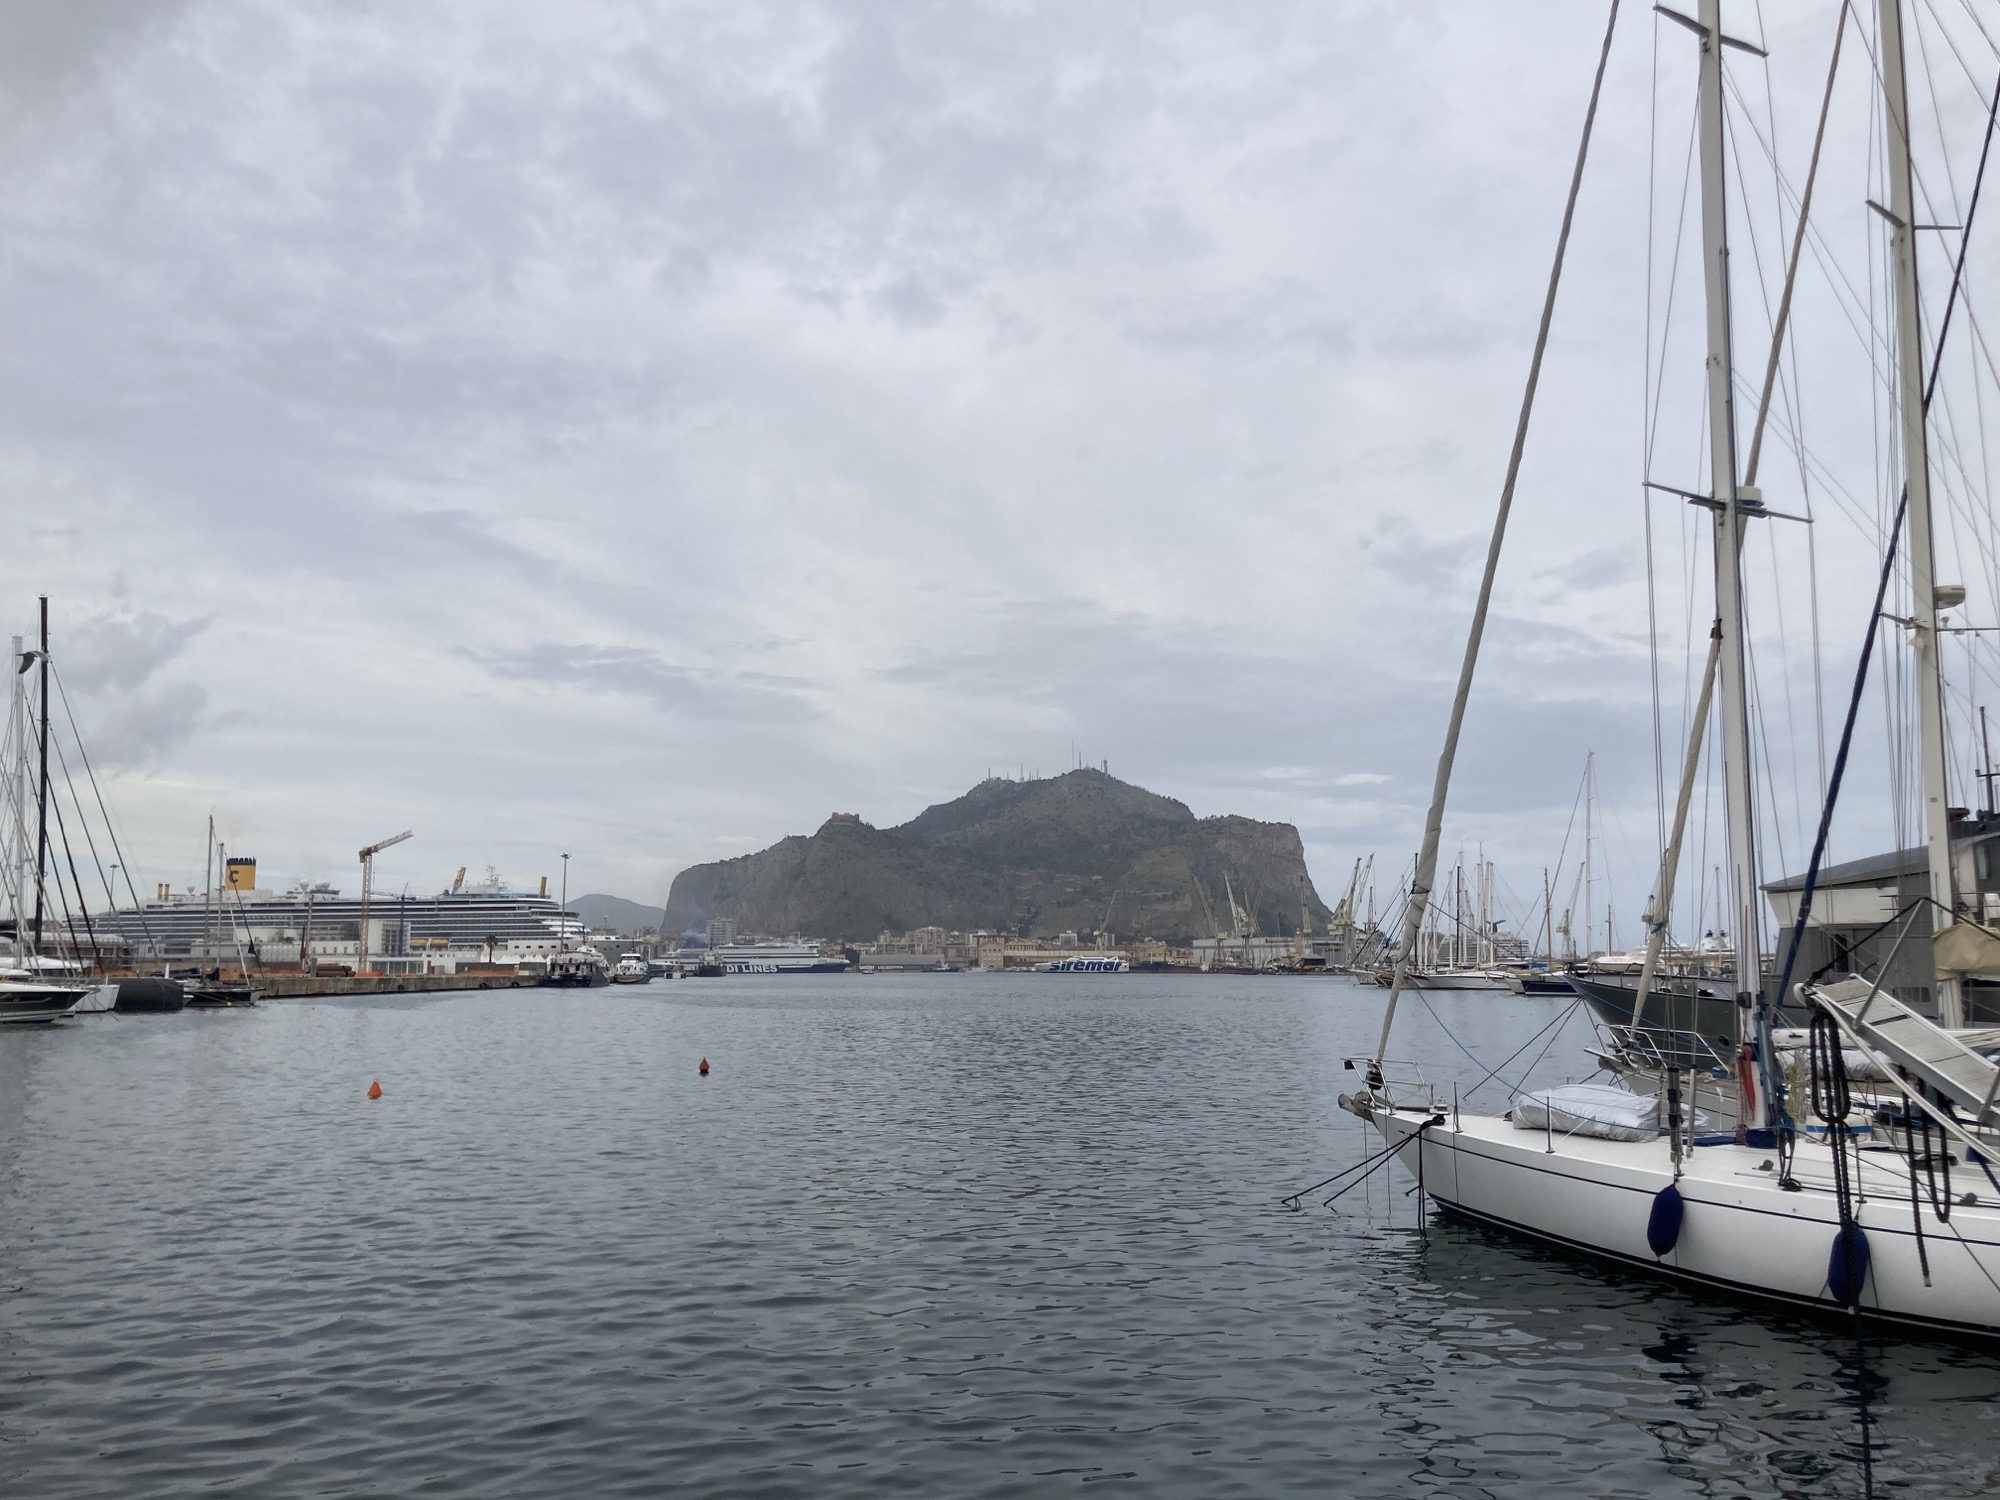 Palermos Hausberg, Monte Pellegrino, vom Hafen aus gesehen, im Vordergrund ein Segelboot im Wasser